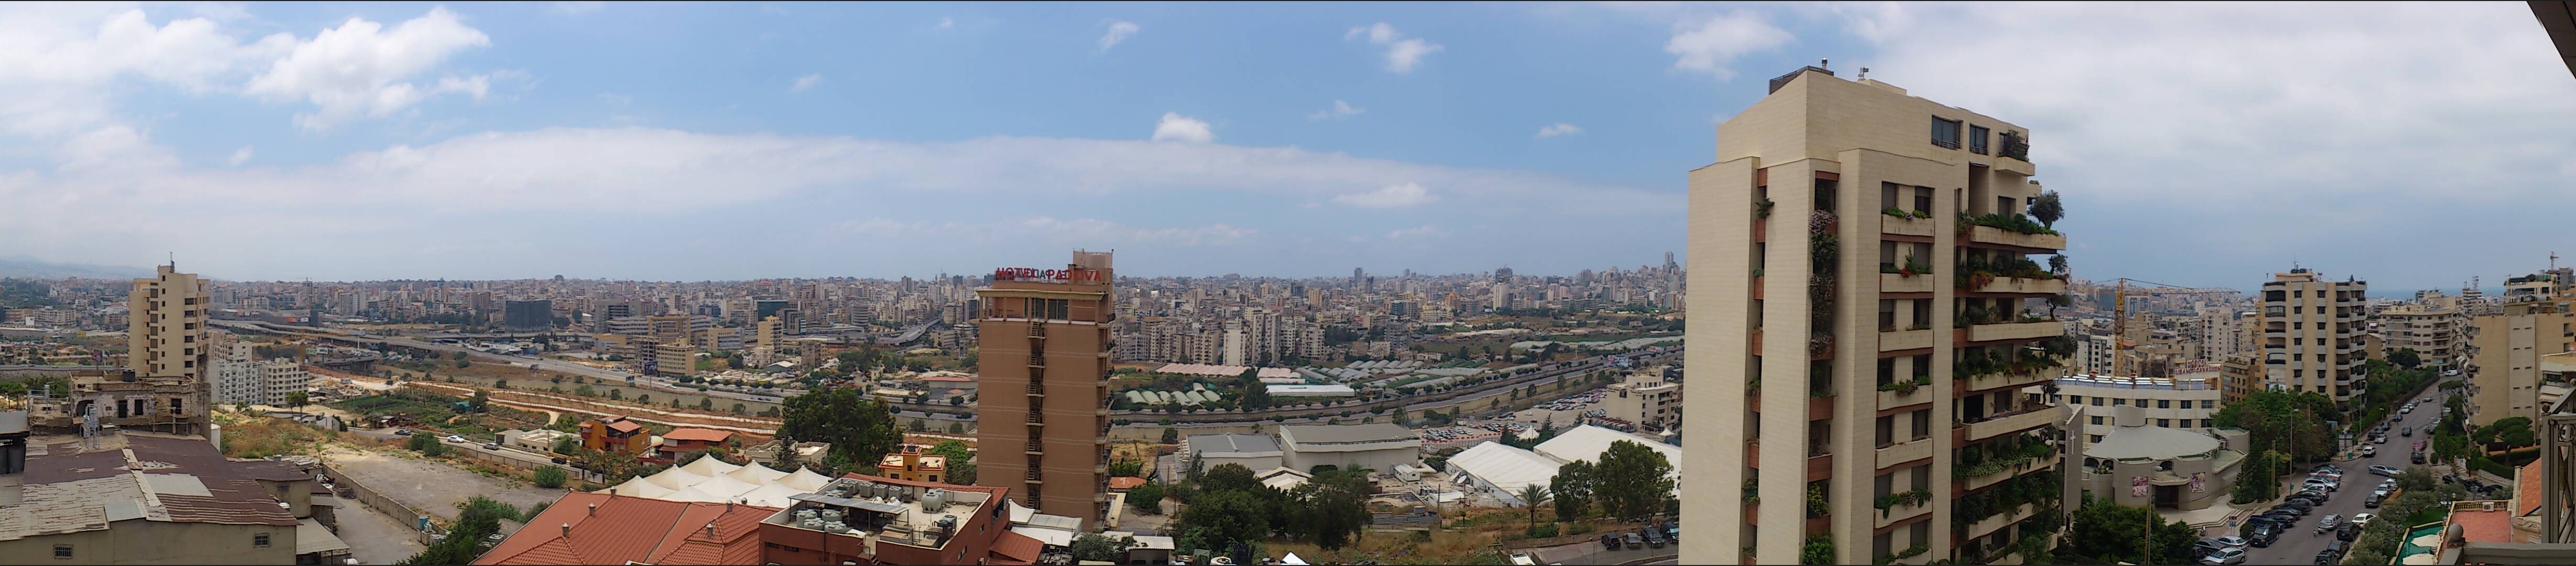 Beirut panorama from Metropolitan Palace